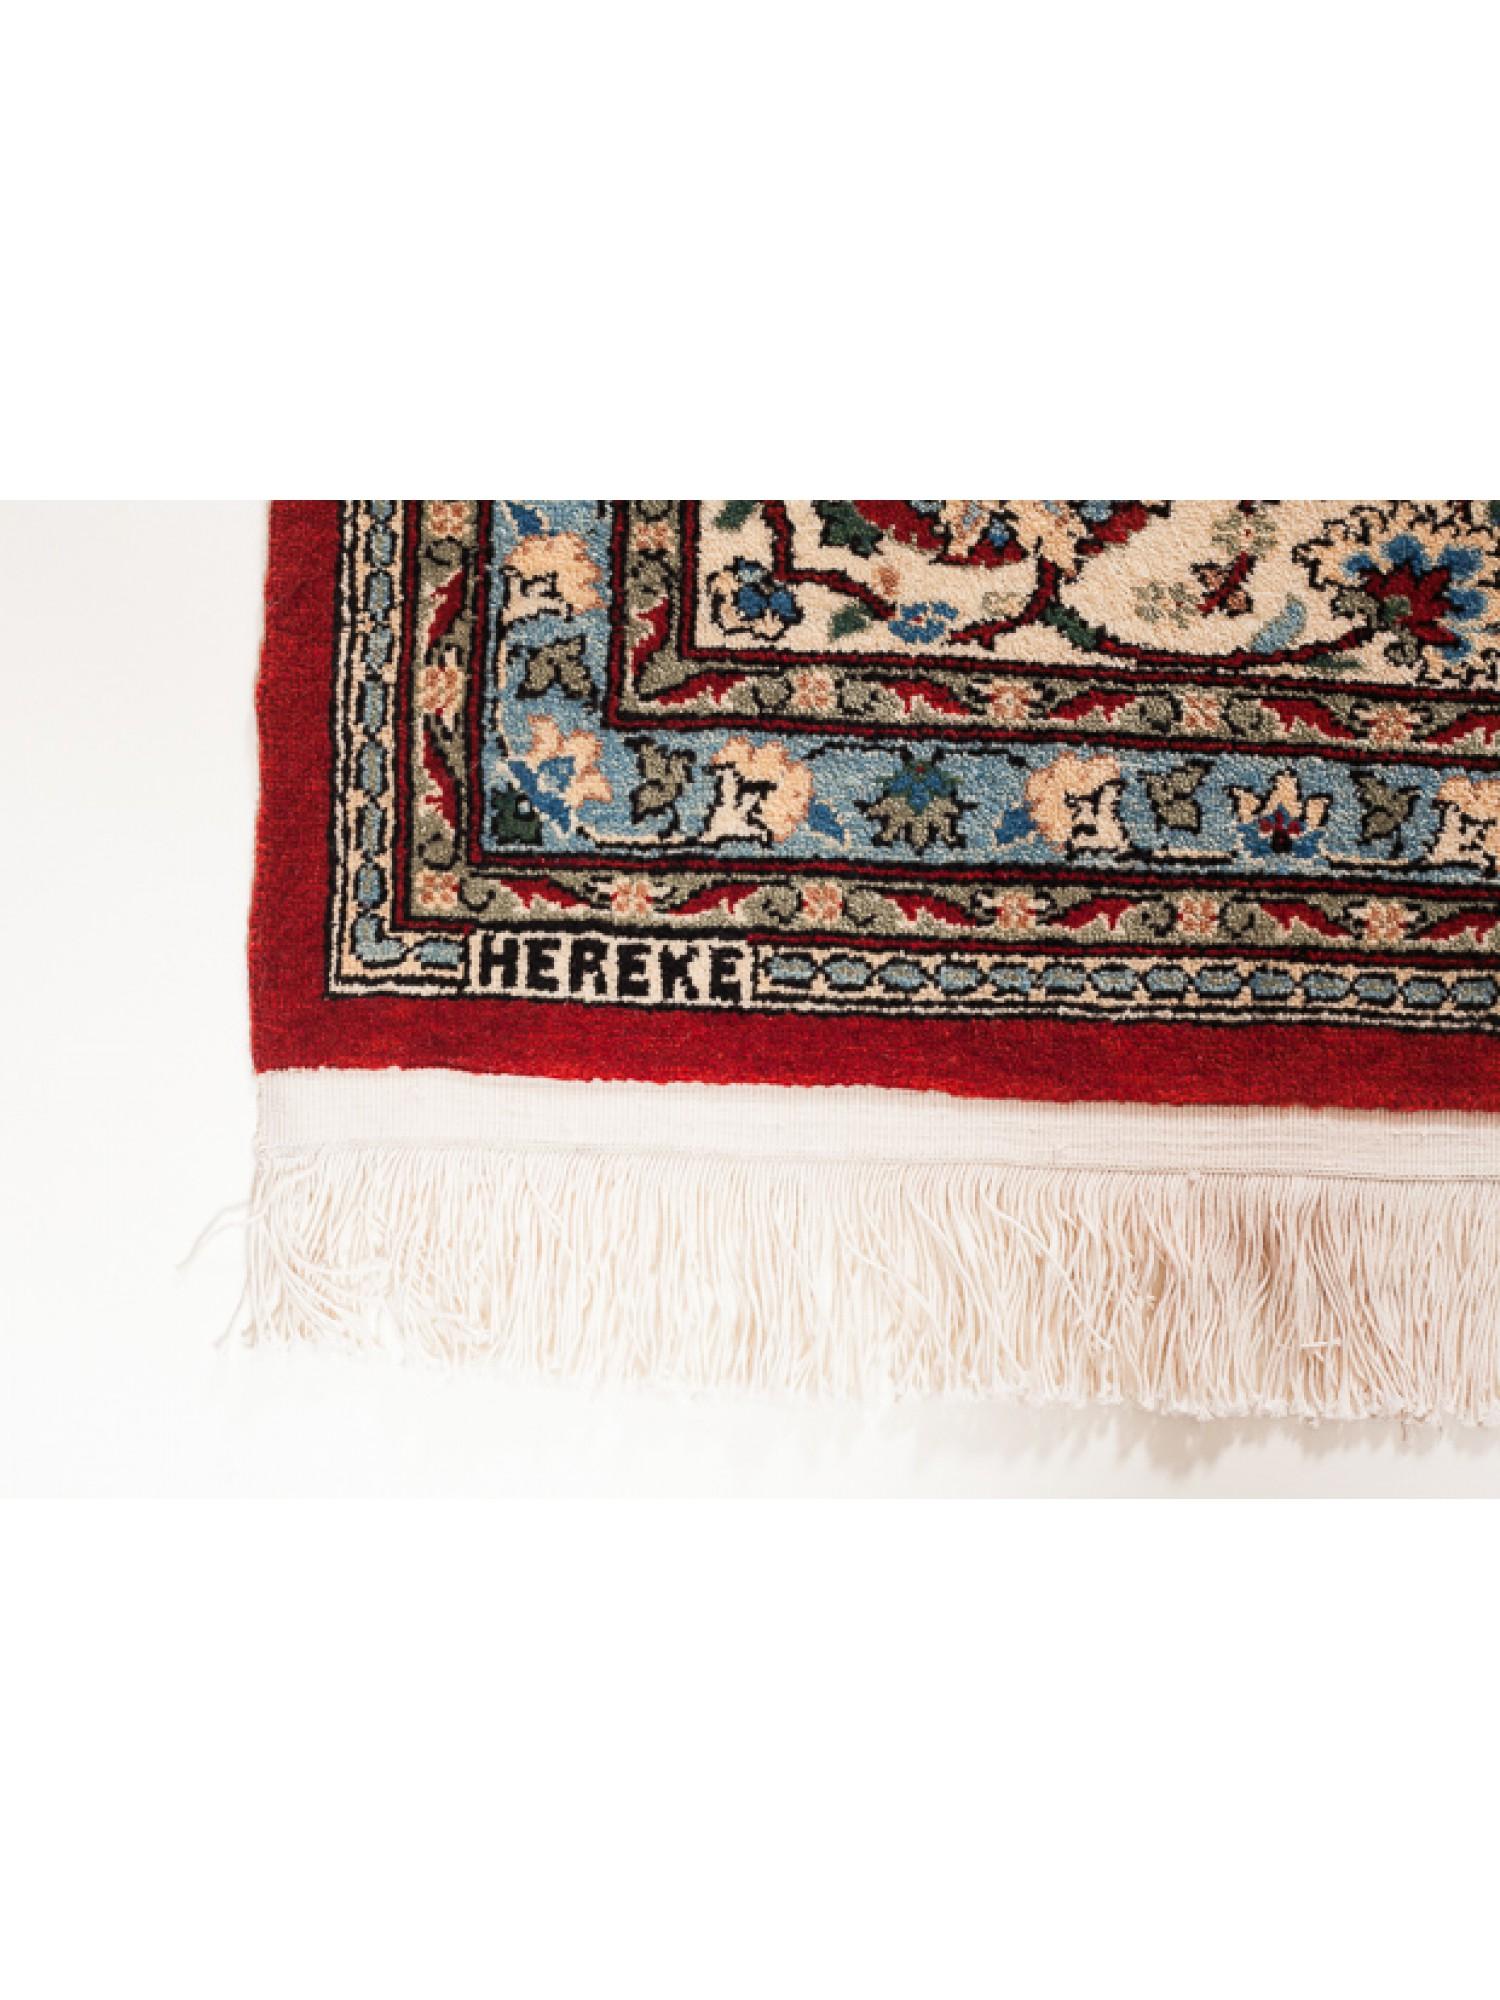 Ce tapis unique en laine de Hereke compte parmi les tapis de la plus haute qualité de l'atelier Hereke. Il y a un treillis de fleurs sur un fond rouge profond, avec la finesse du tissage, l'utilisation de la couleur, et le design élégant et